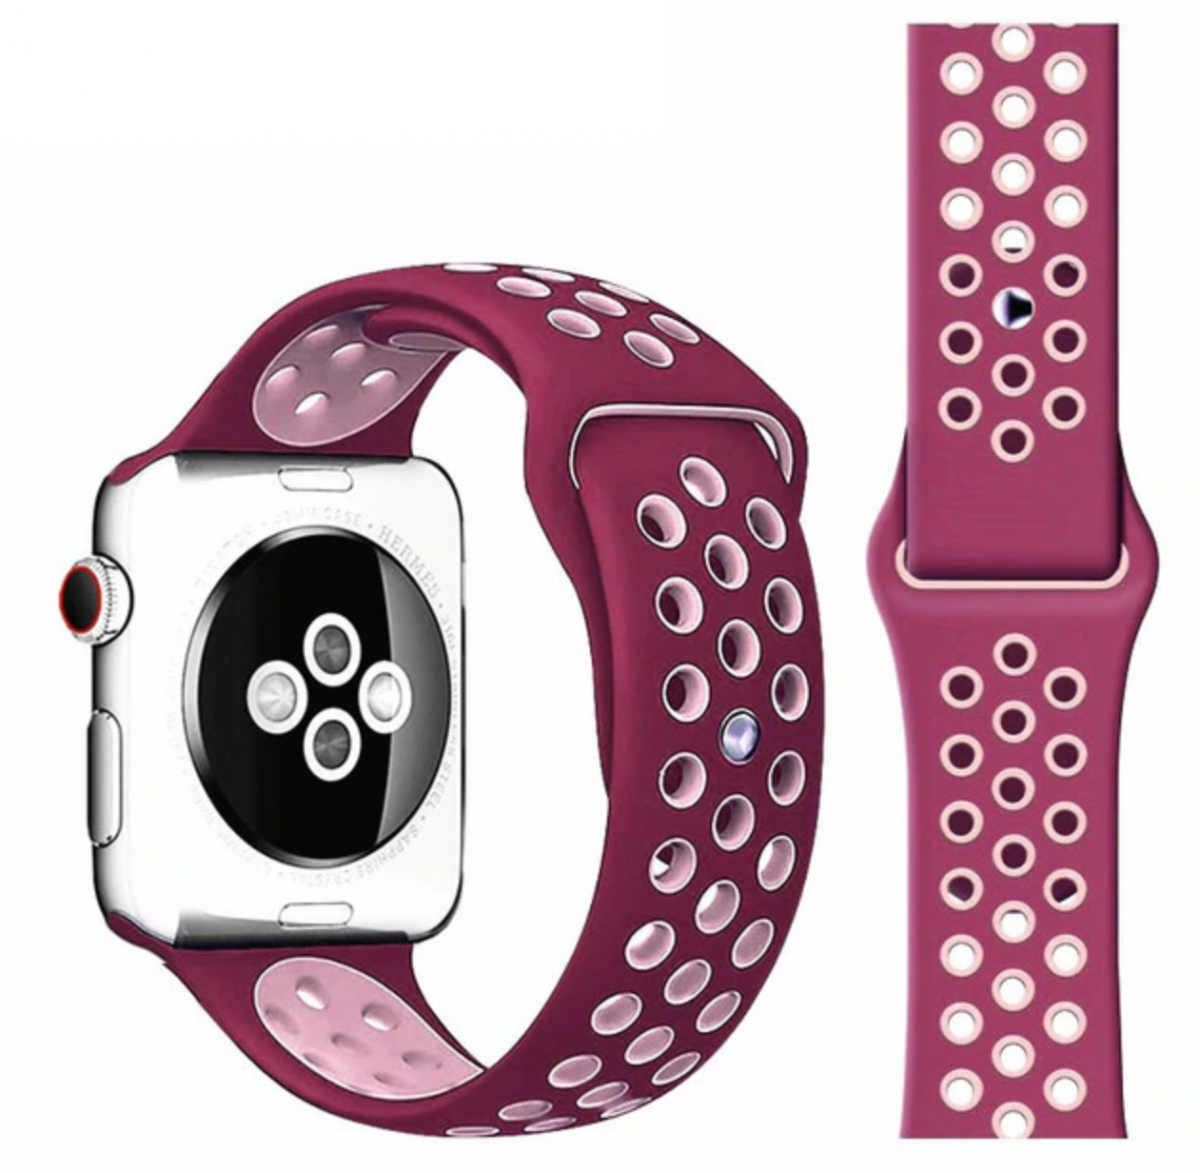 Řemínek SPORT pro Apple Watch Series 1/2/3 (42mm) - Vínový/Růžový